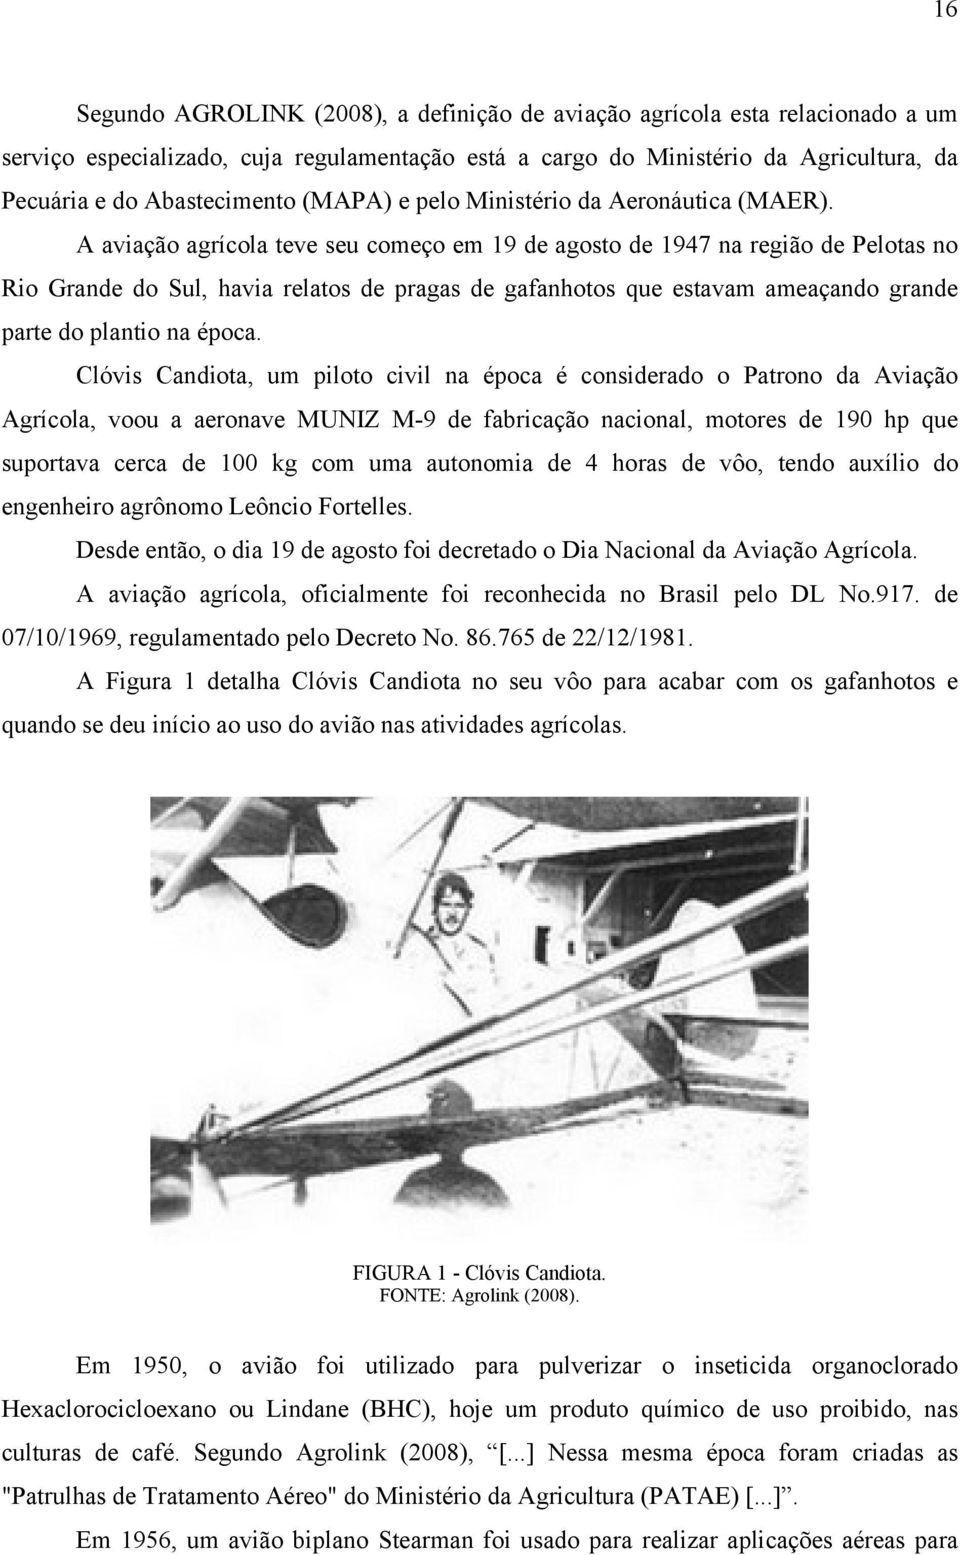 A aviação agrícola teve seu começo em 19 de agosto de 1947 na região de Pelotas no Rio Grande do Sul, havia relatos de pragas de gafanhotos que estavam ameaçando grande parte do plantio na época.